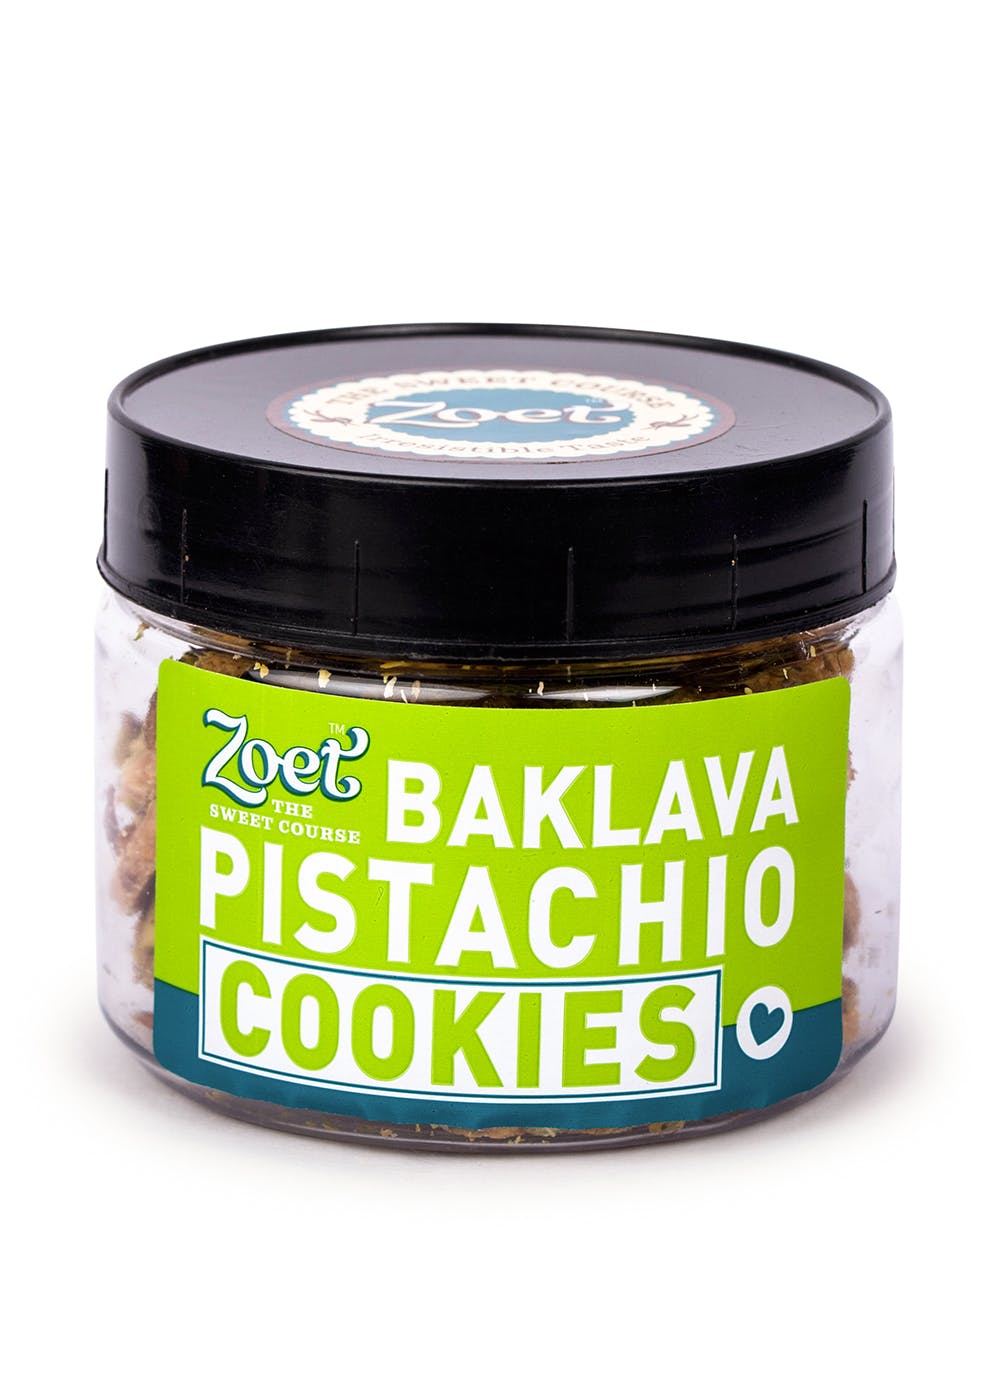 Pistachio Baklava Cookies